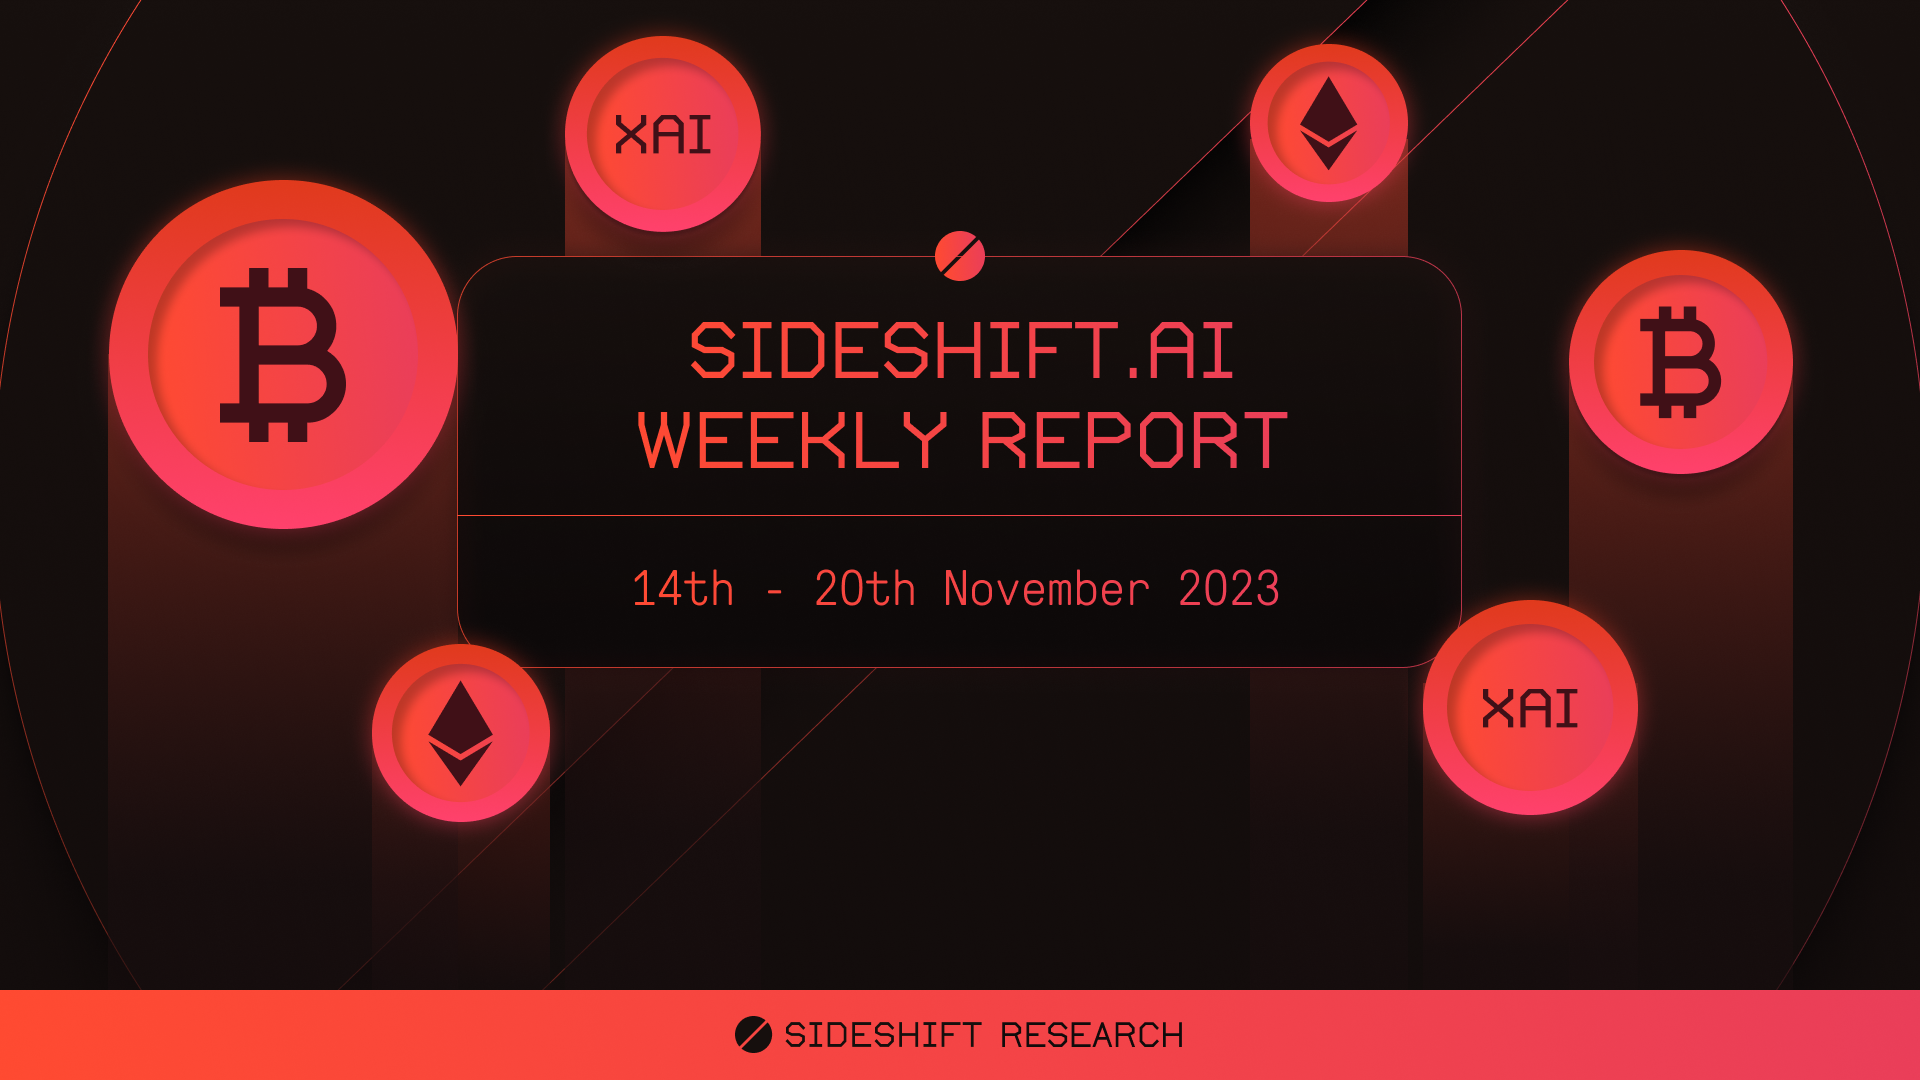 SideShift.ai Weekly Report | 14th - 20th November 2023